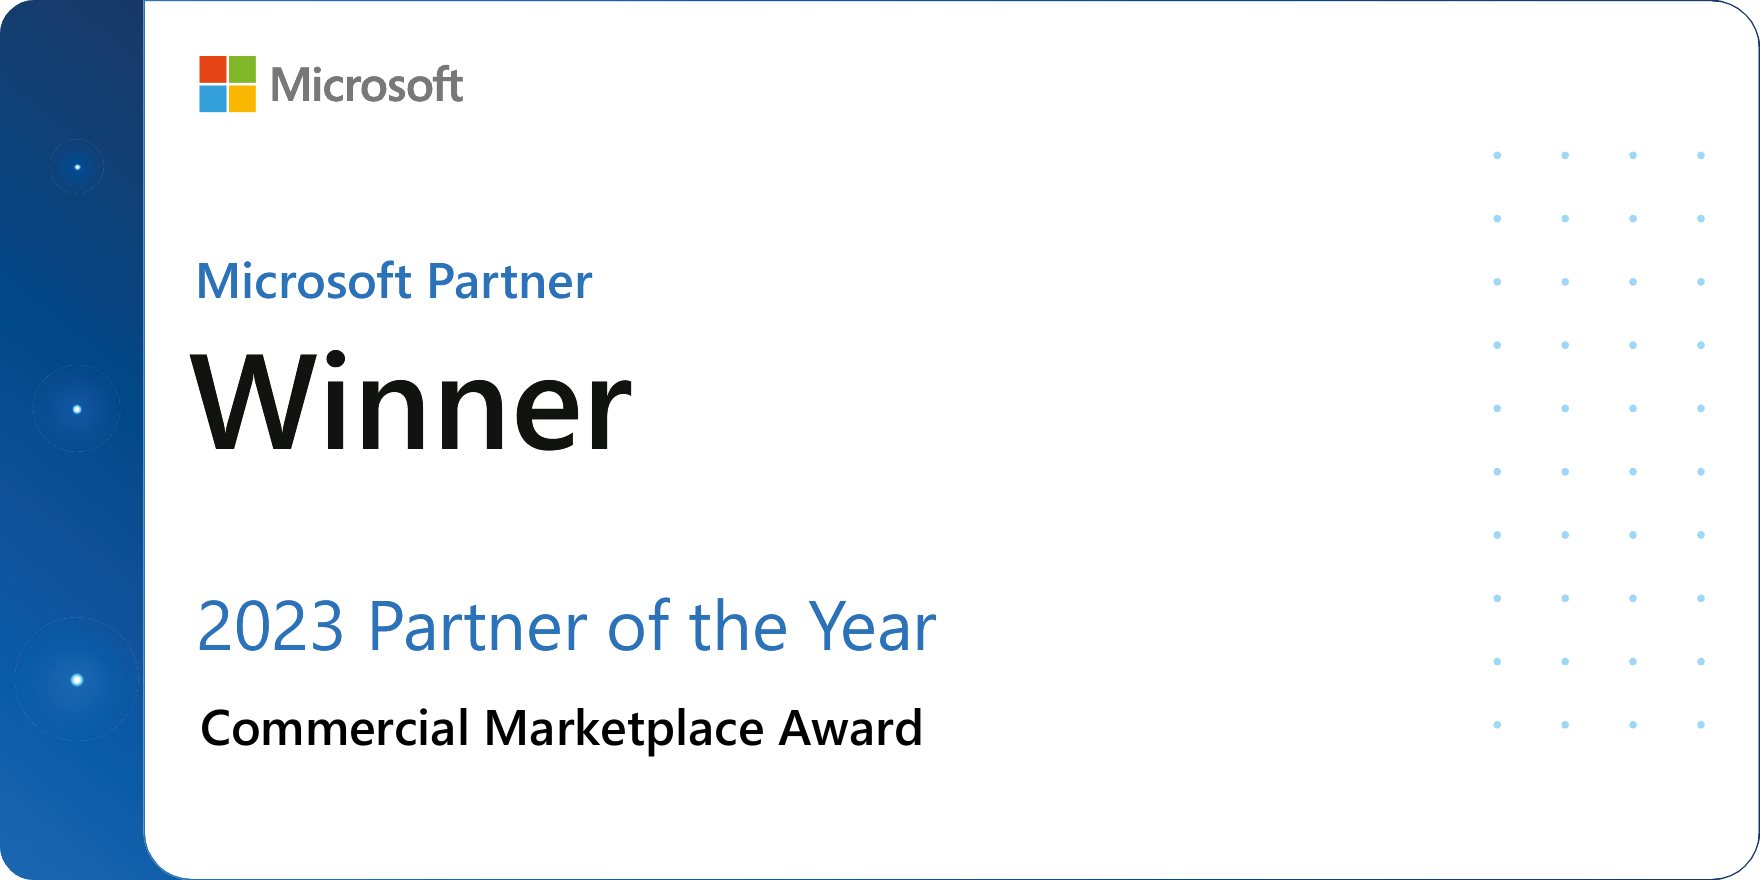 Microsoft Partner Winner - 2023 Partner of the Year - Commercial Marketplace Award